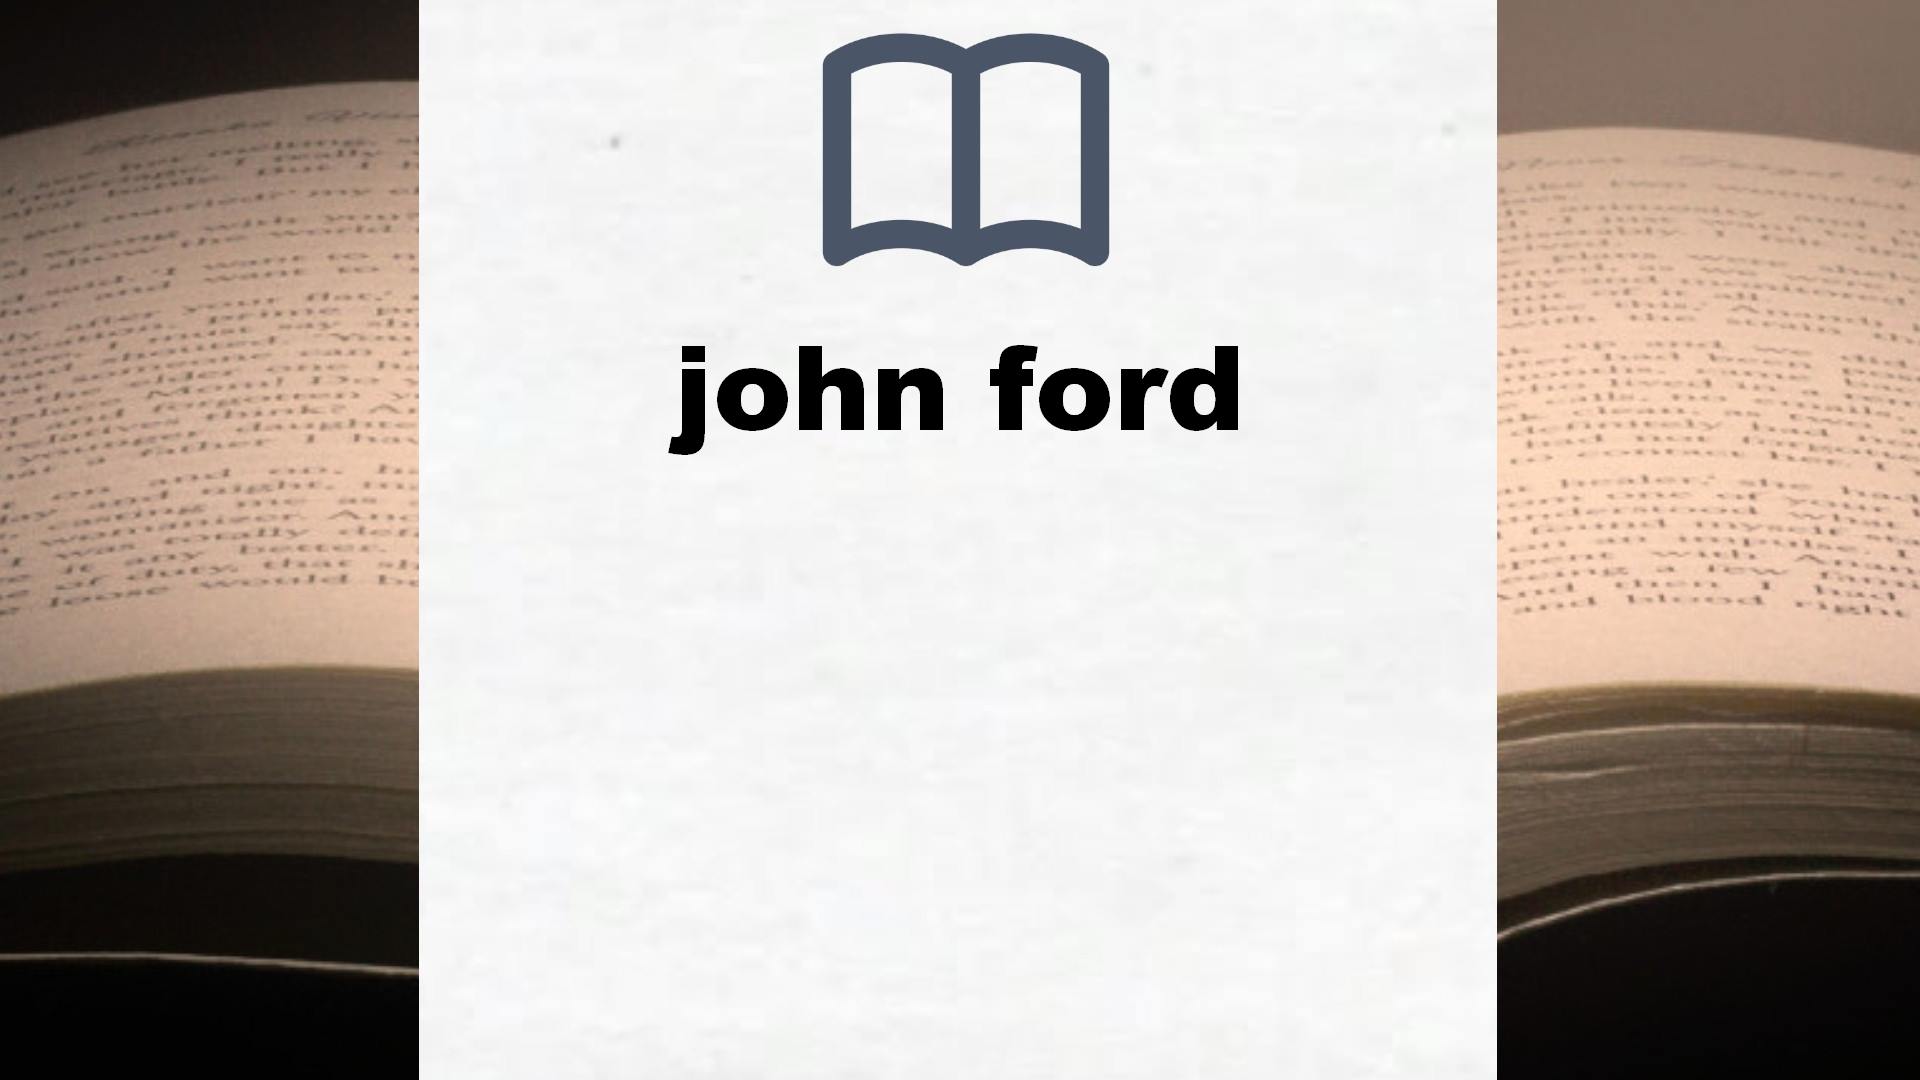 Libros sobre john ford